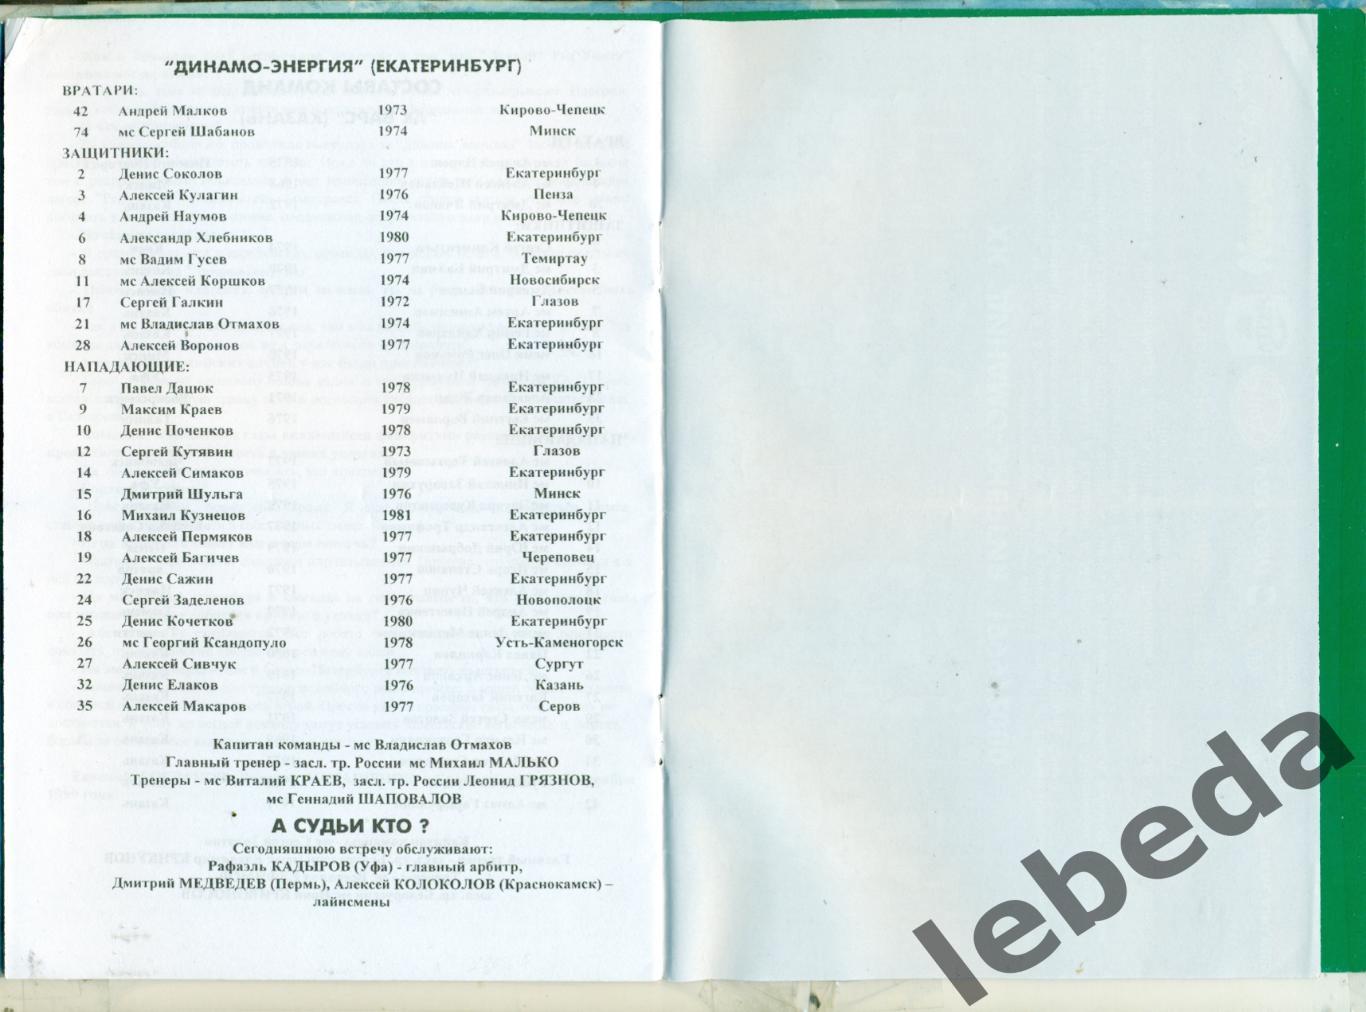 Динамо-Энергия Екатеринбург - Нефтехимик Нижнекам - 1999 / 2000 г. (21.11.1999.) 2